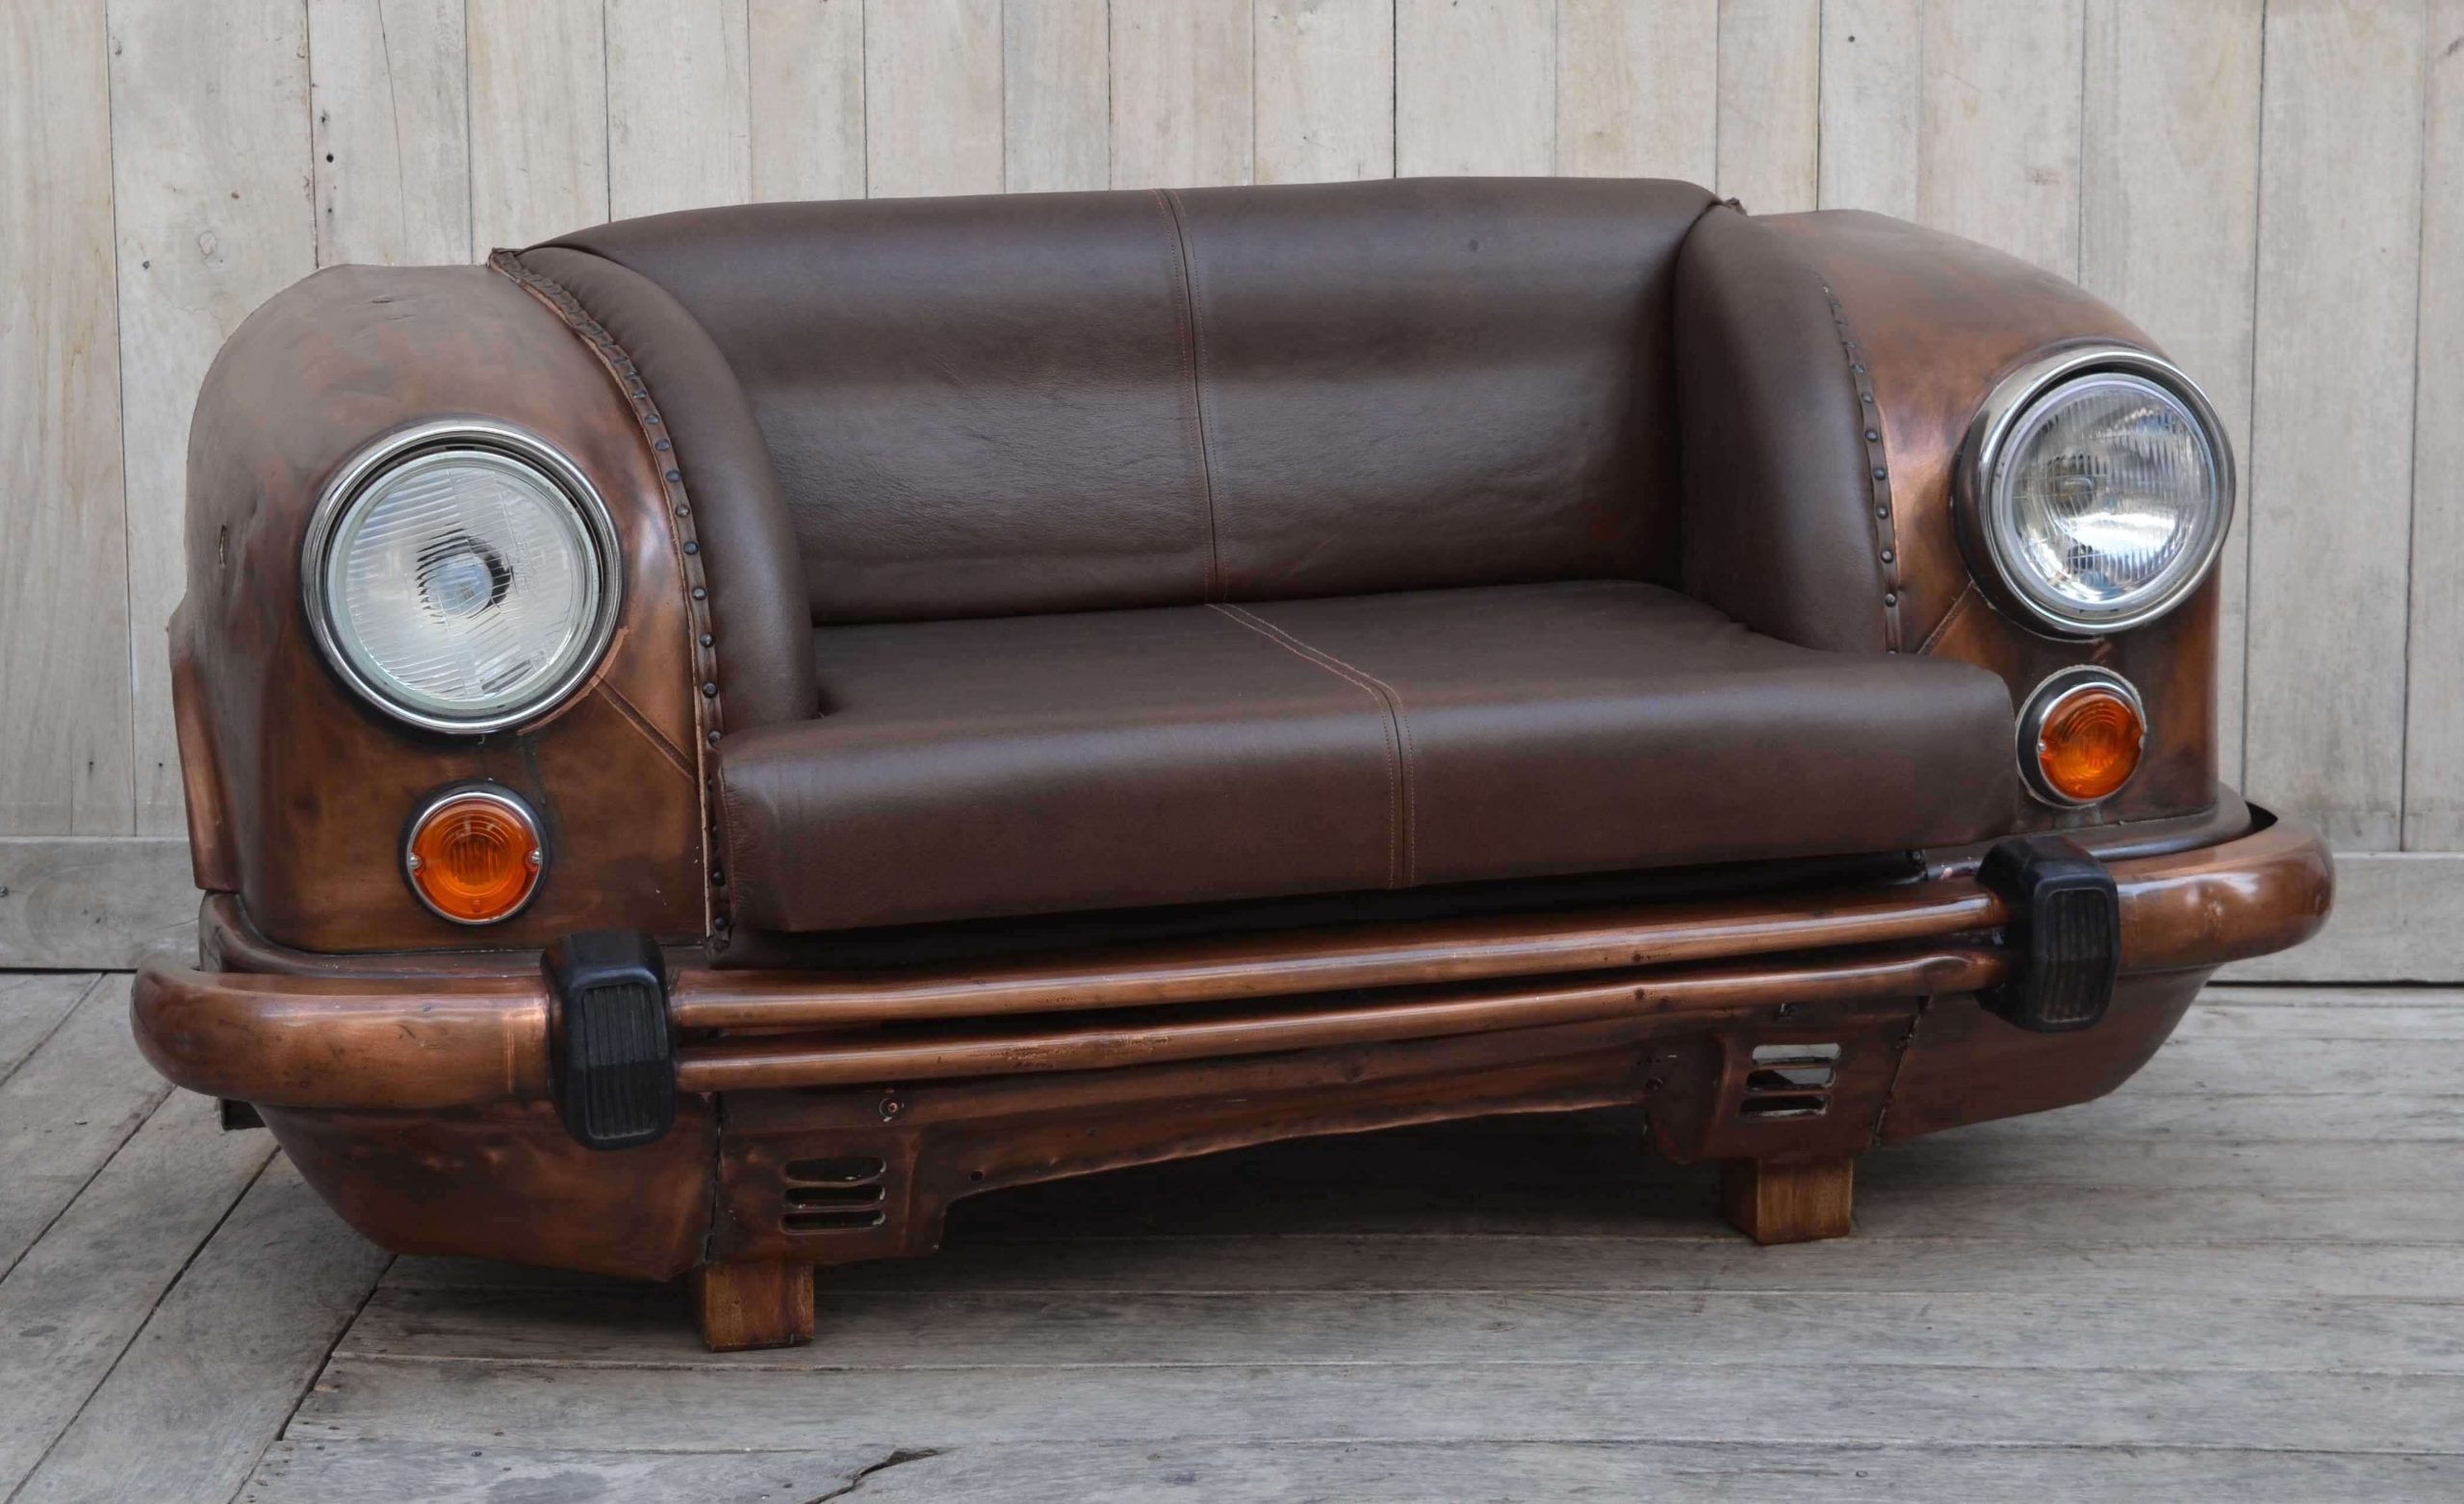 Car Furniture Designs